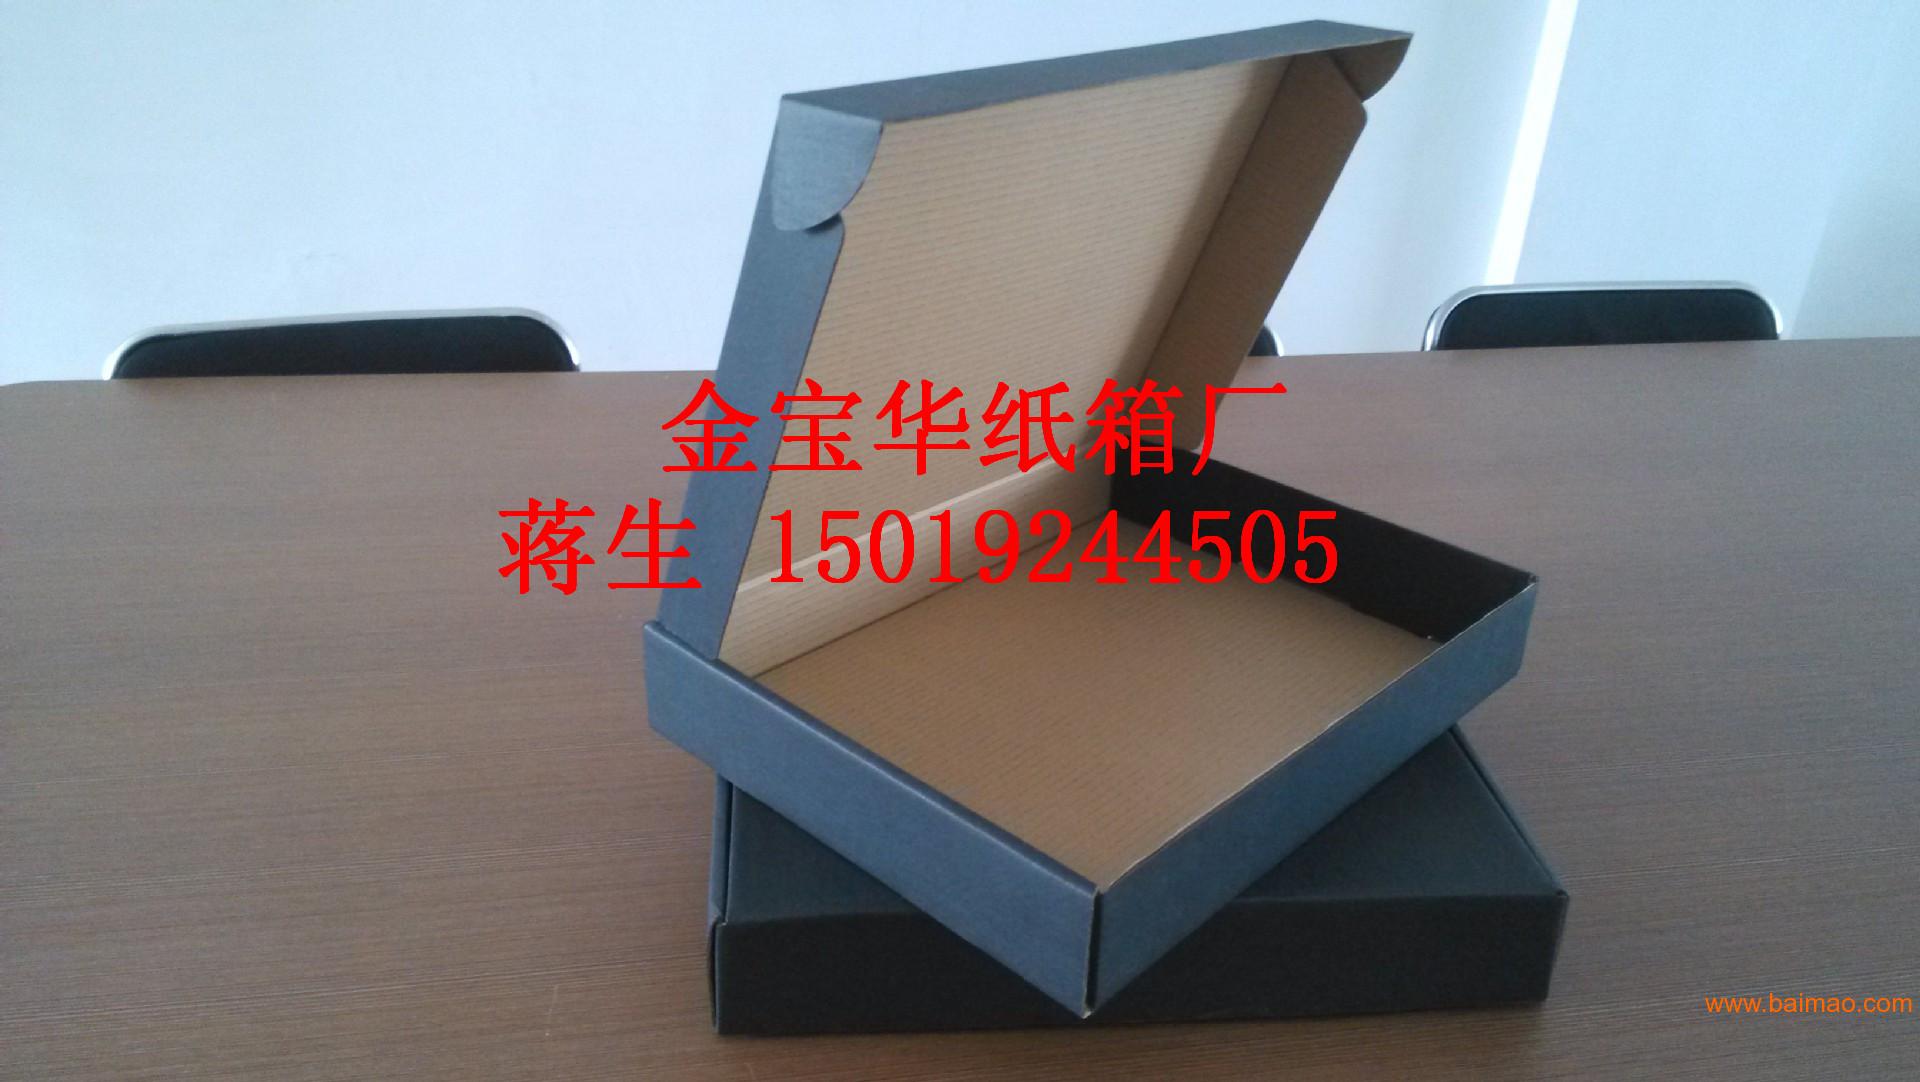 深圳服饰飞机盒厂家 彩色飞机盒 T9服装飞机盒